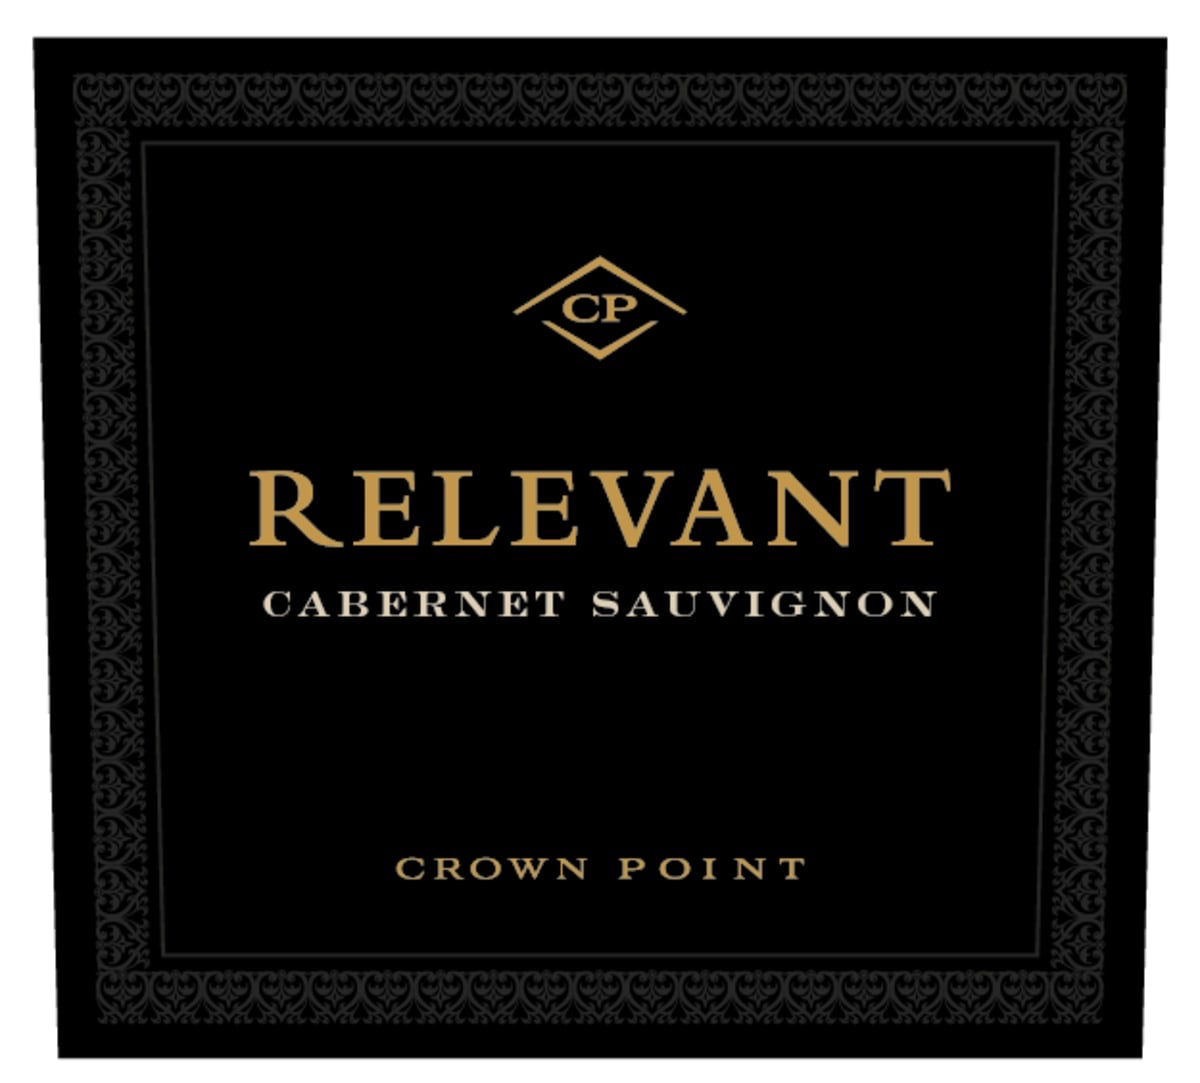 Crown Point 2018 Relevant Cabernet Sauvignon